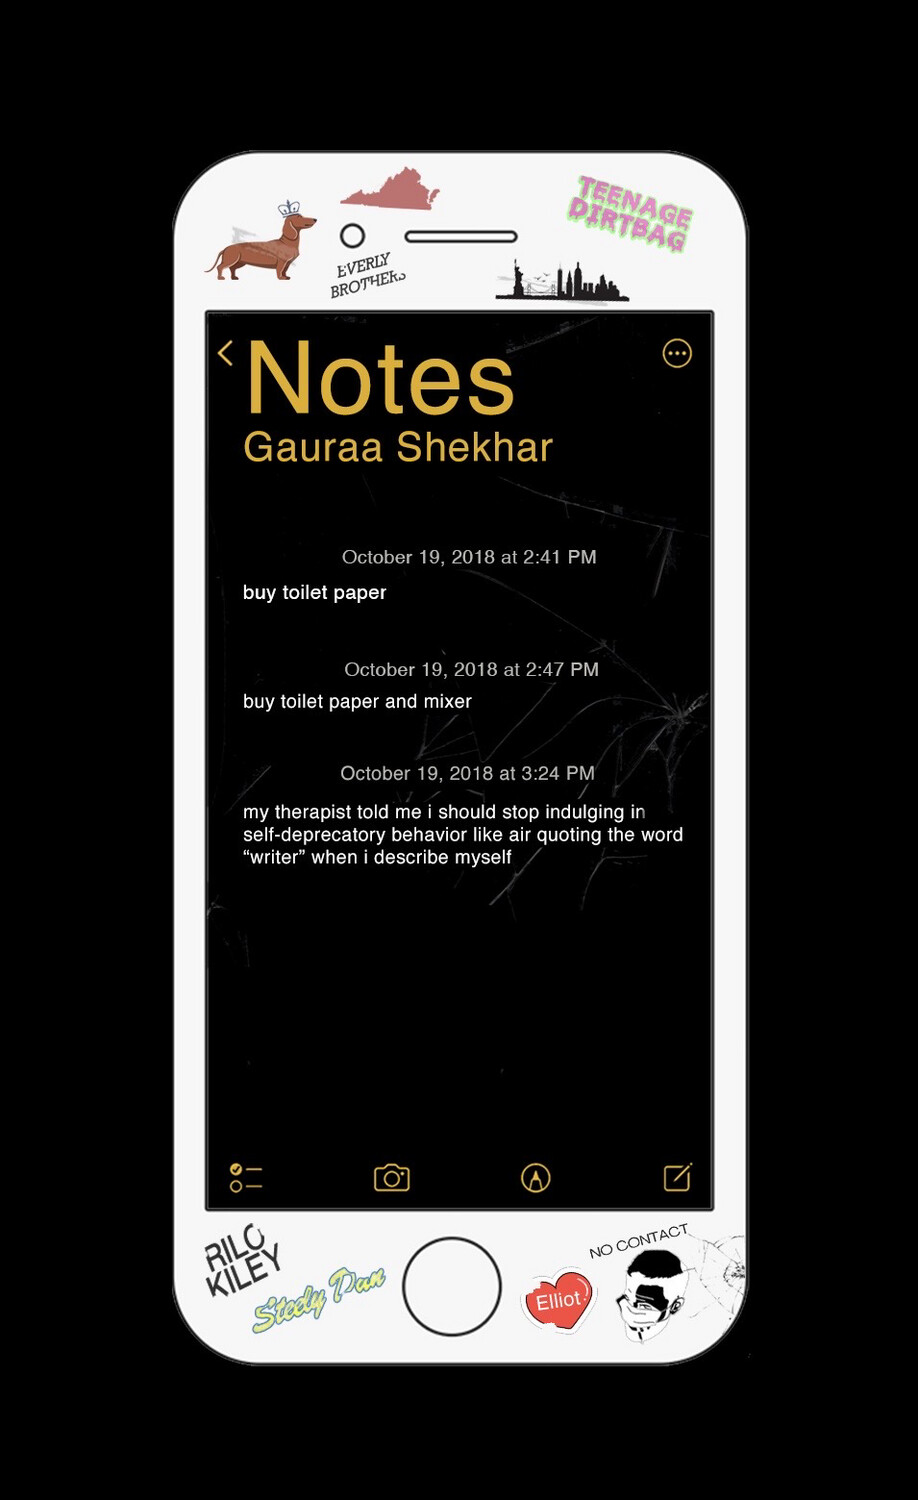 notes by gauraa shekhar